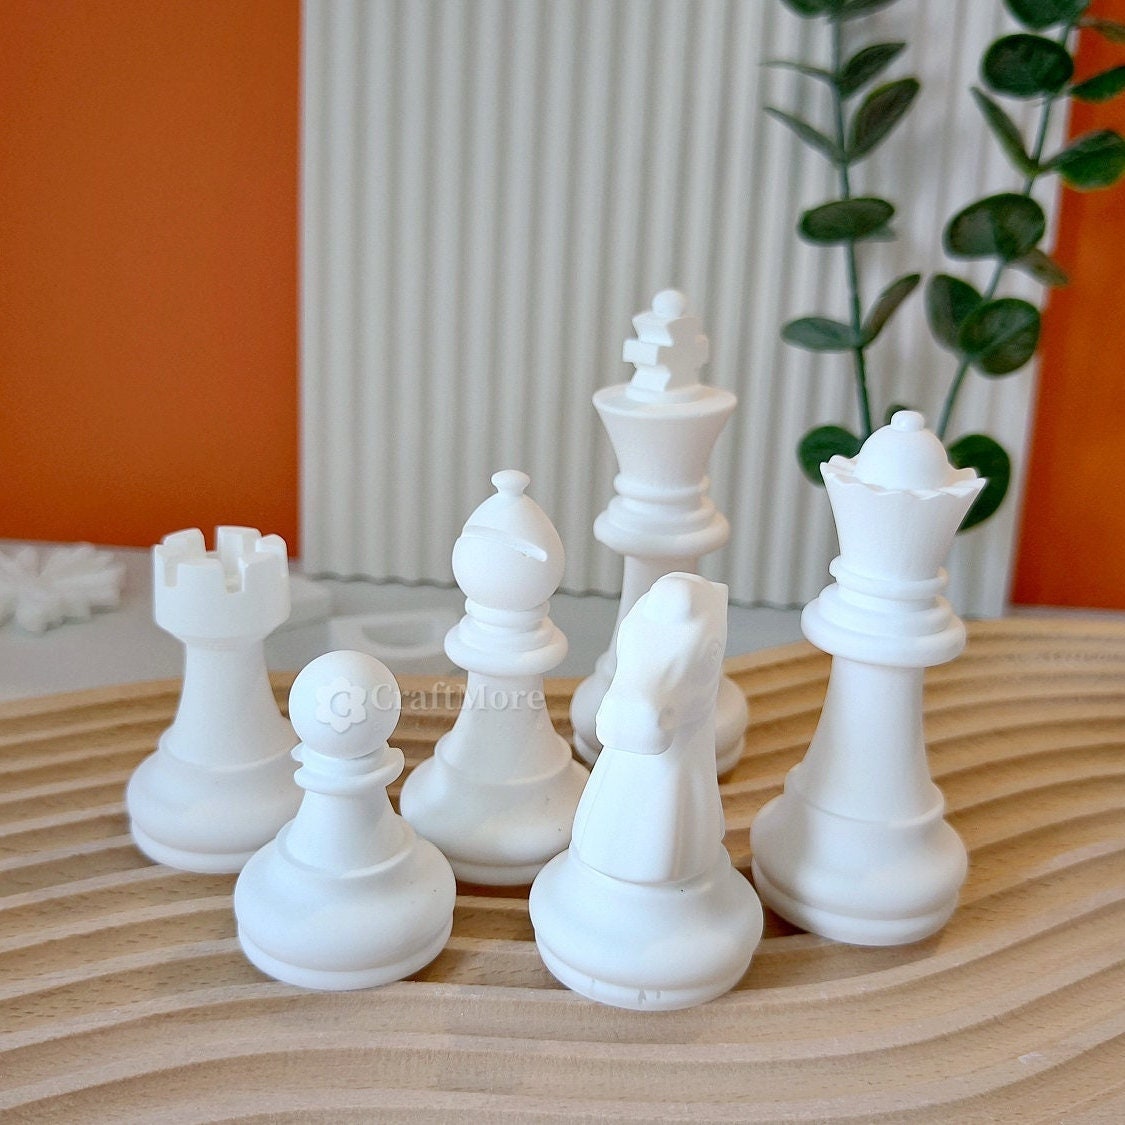 Jeu de moule en résine de plateau d'échecs, 1pc Checker Game Board Moule en  silicone et 16pcs 3D Pièces d'échecs Moules de moulage en résine - Pour la  fabrication de bijoux de